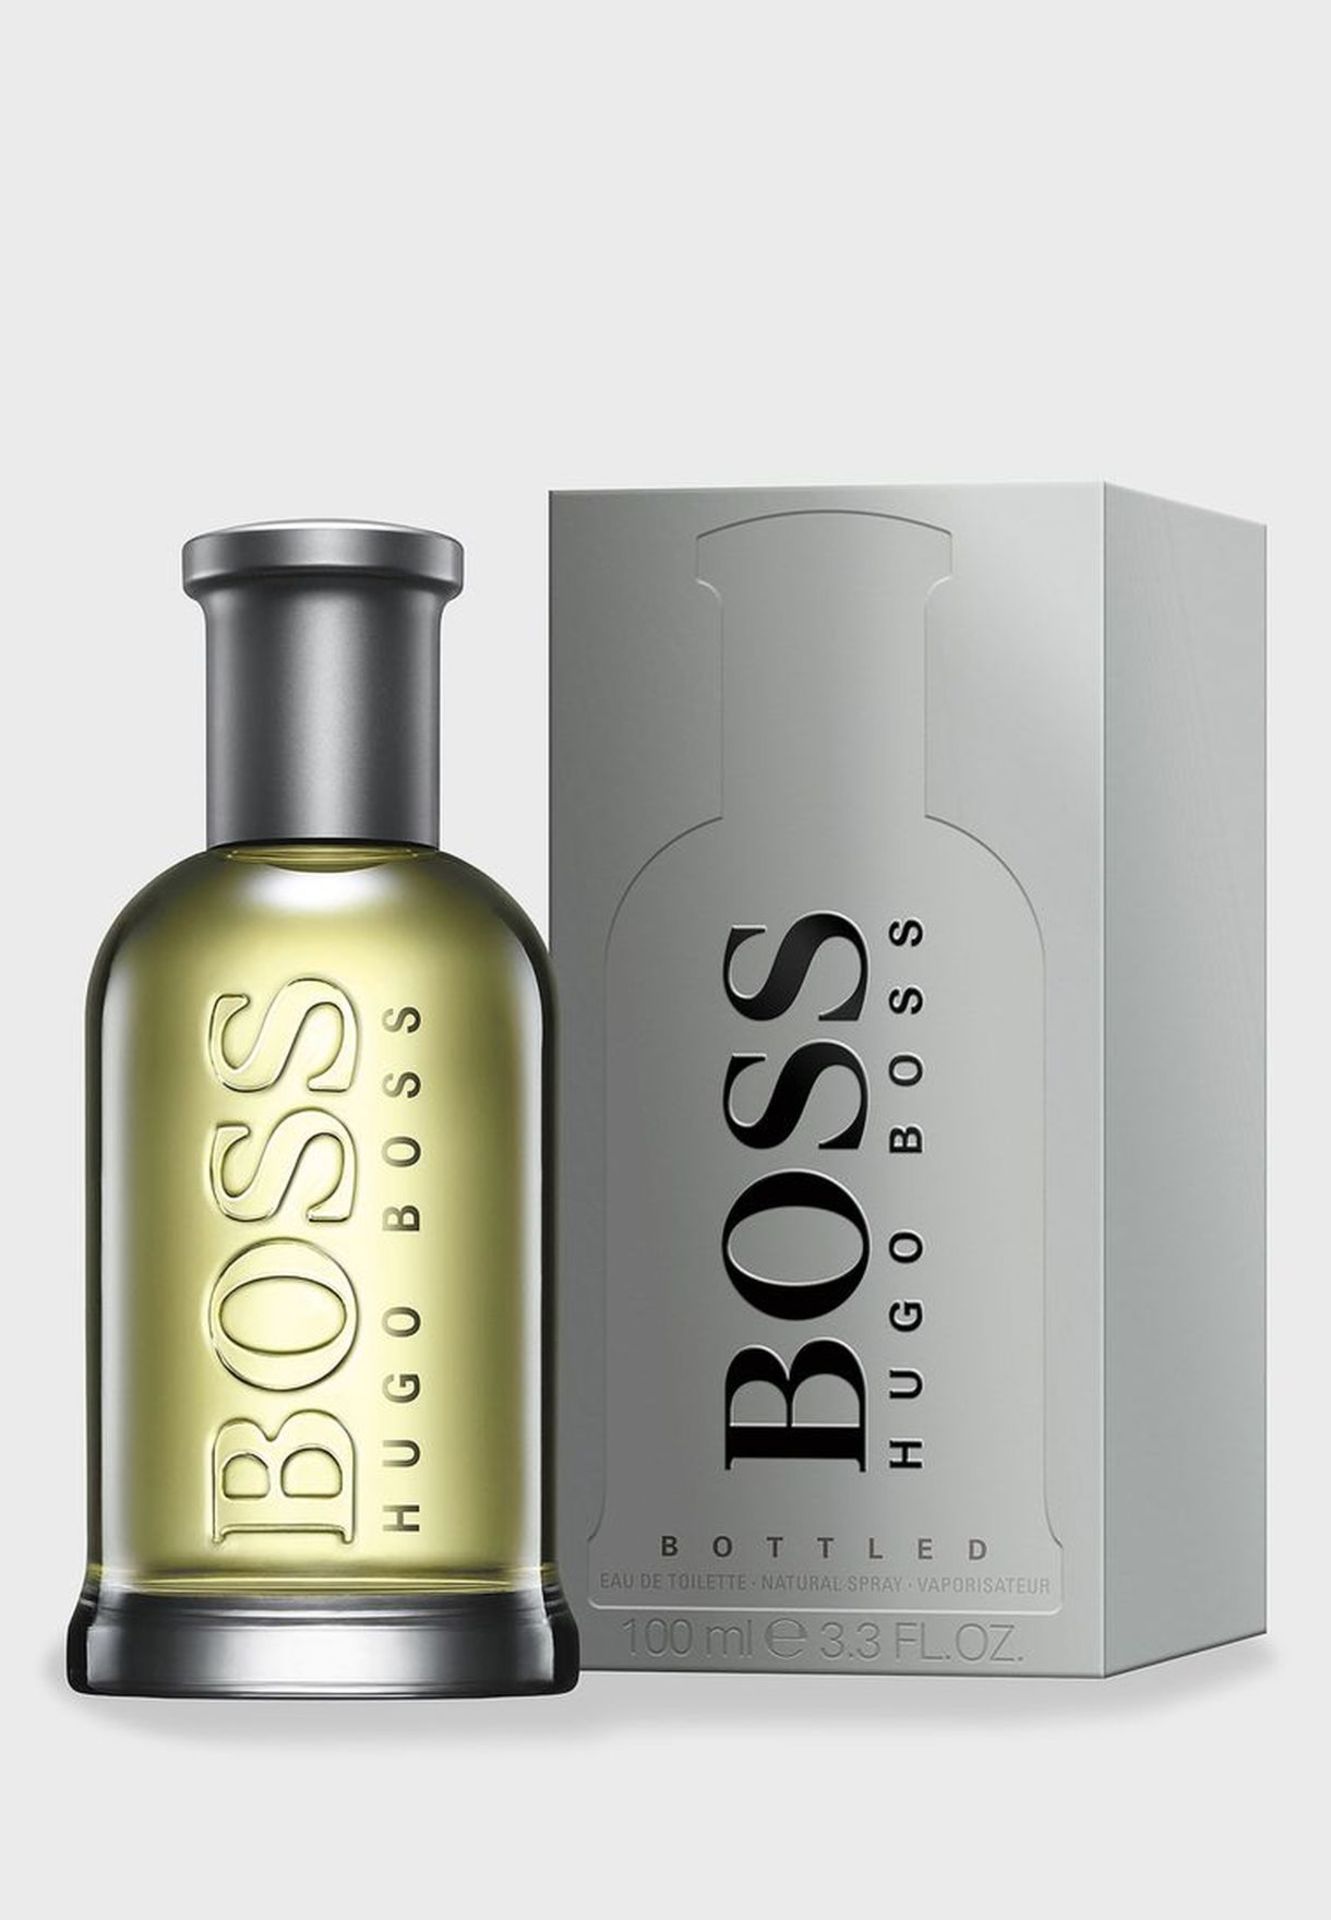 V Brand New HUGO BOSSHugo Boss Bottled Grey 100ml EDT Spray